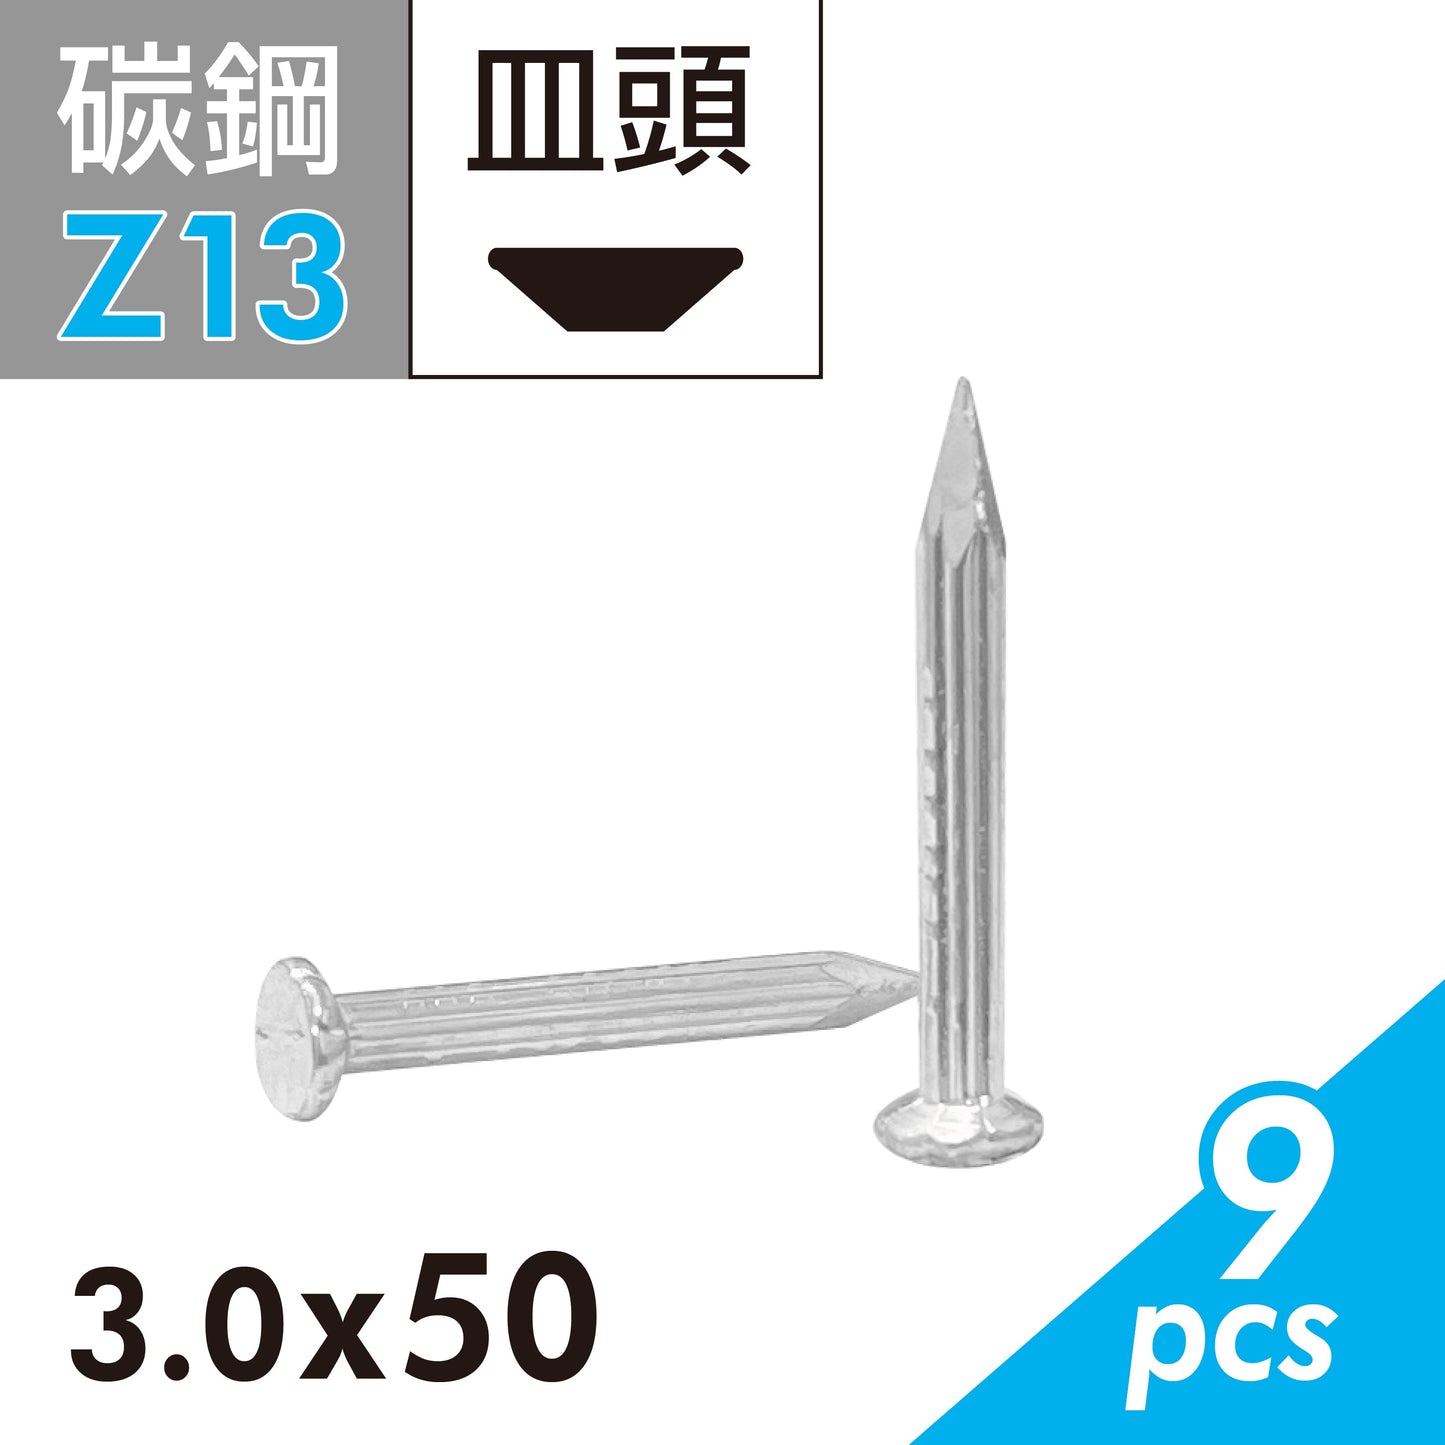 鋼釘 水泥釘 水泥鋼釘 釘子 鐵釘 水泥 混泥土適用 台灣製造 (E02D-Z13)